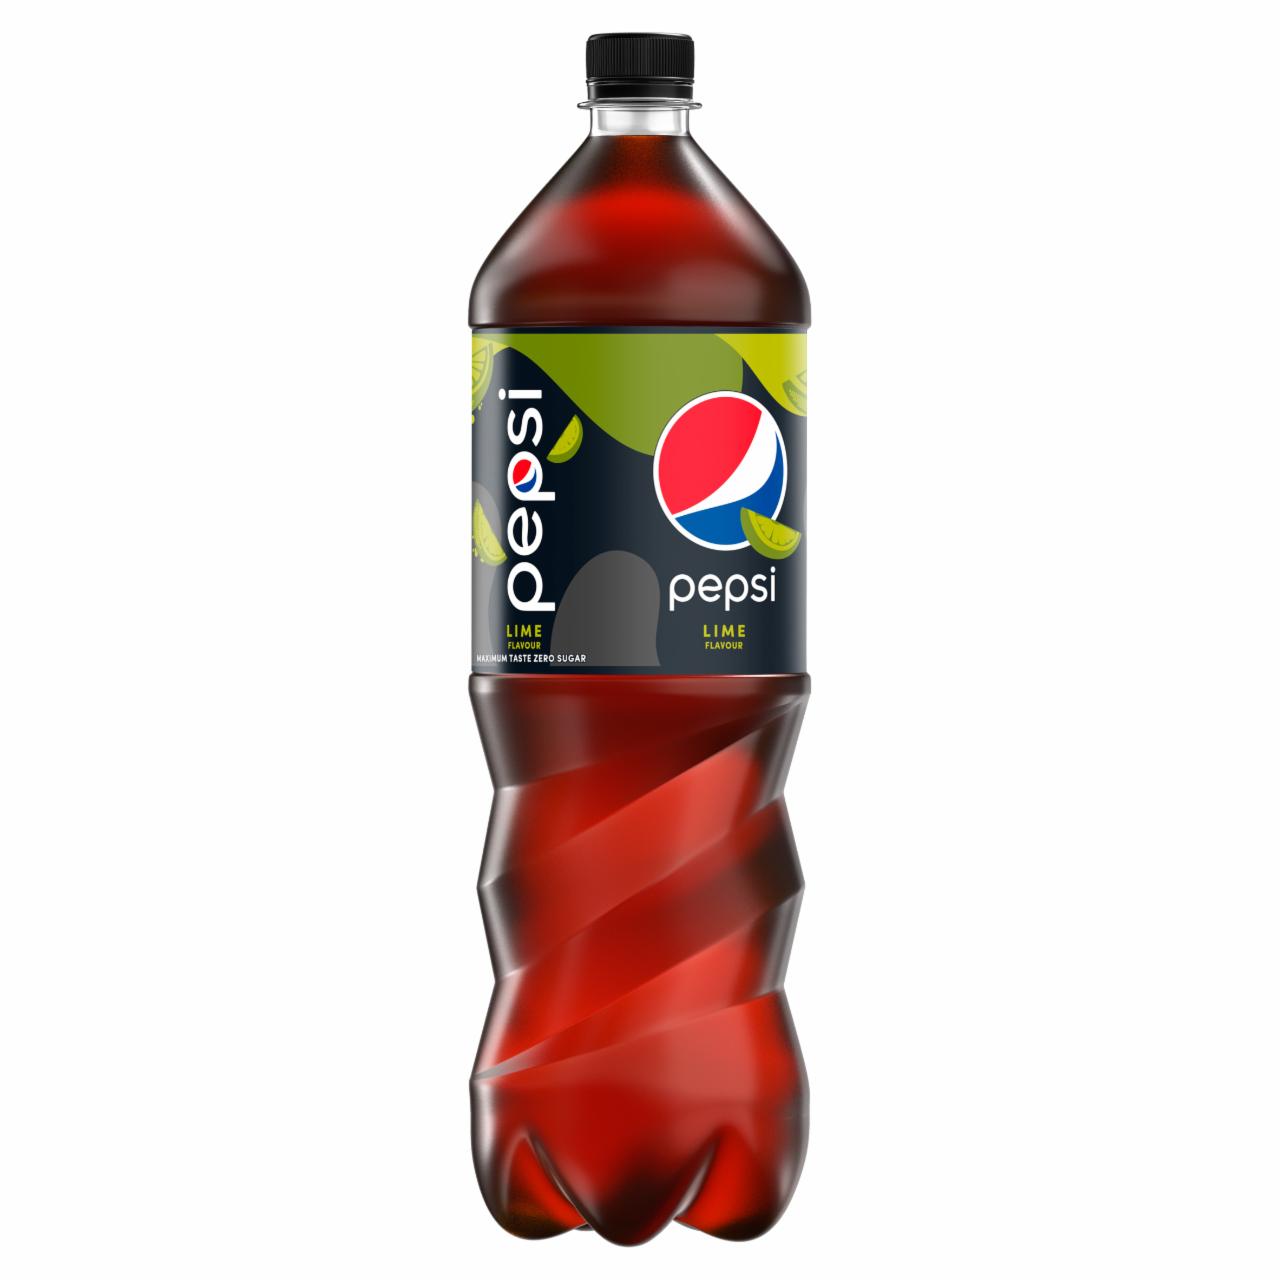 Zdjęcia - Pepsi Lime Napój gazowany 1,5 l